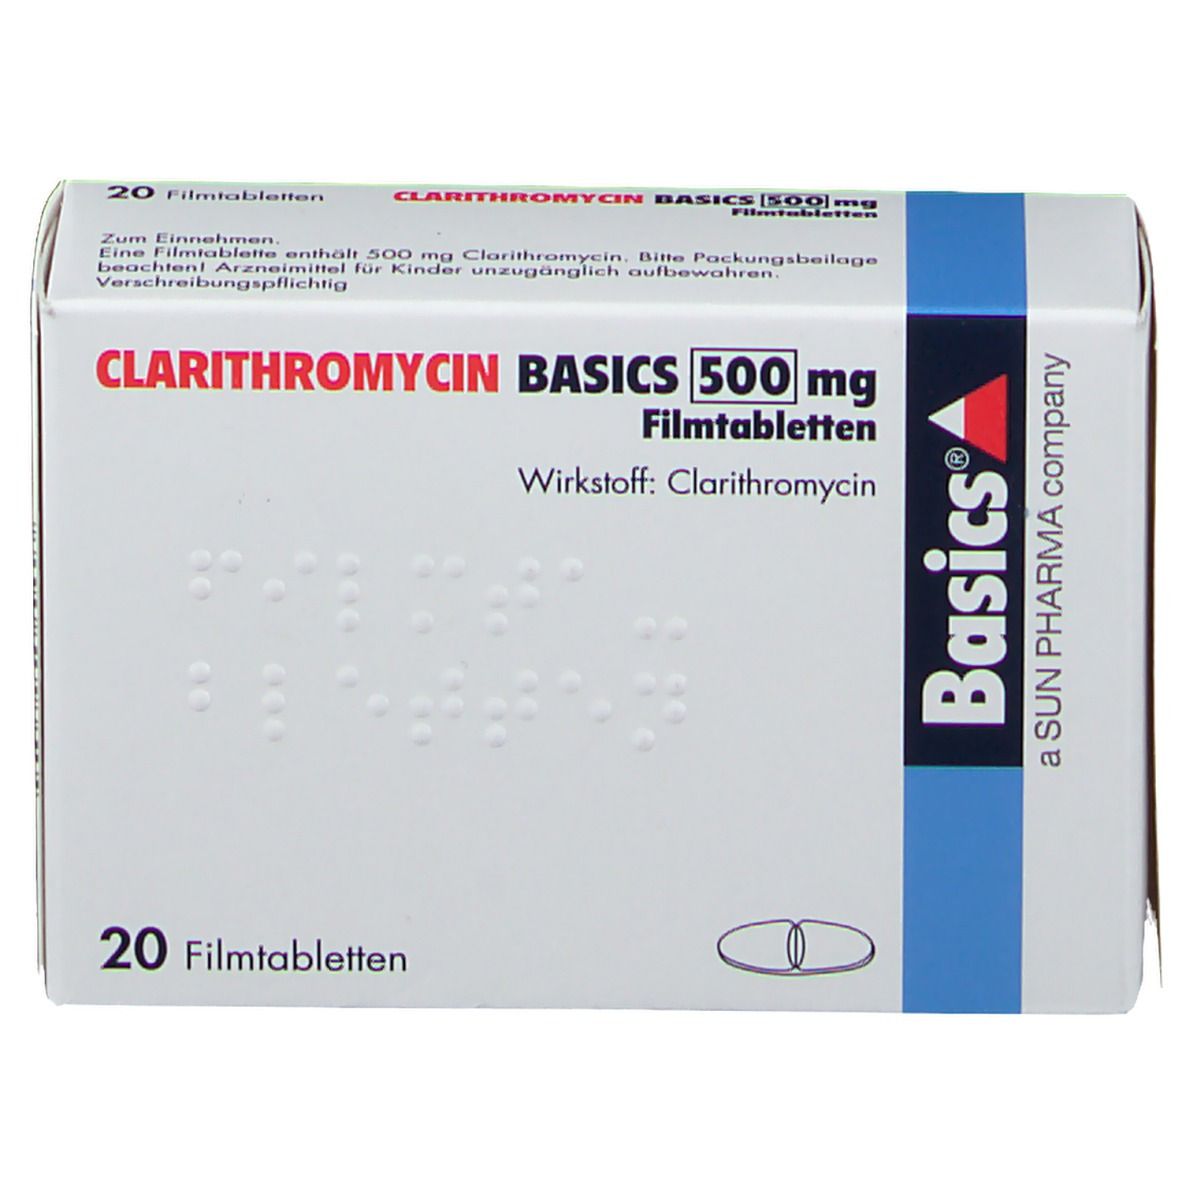 CLARITHROMYCIN BASICS 500 mg